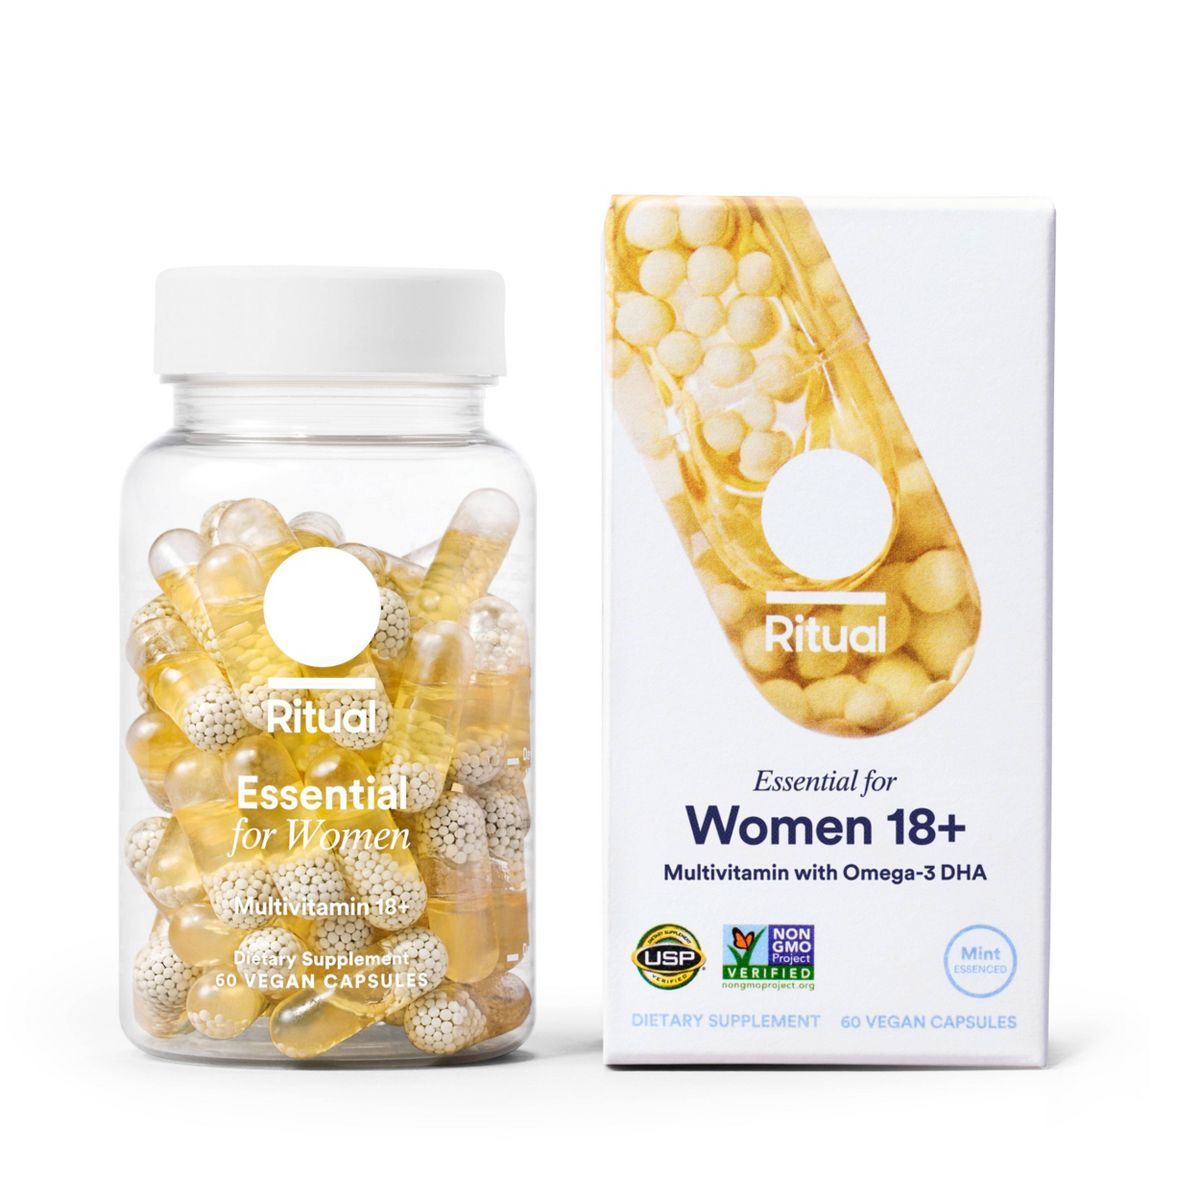 Ritual Essential Multivitamin for Women 18+ Vegan Capsules - Mint - 60ct | Target